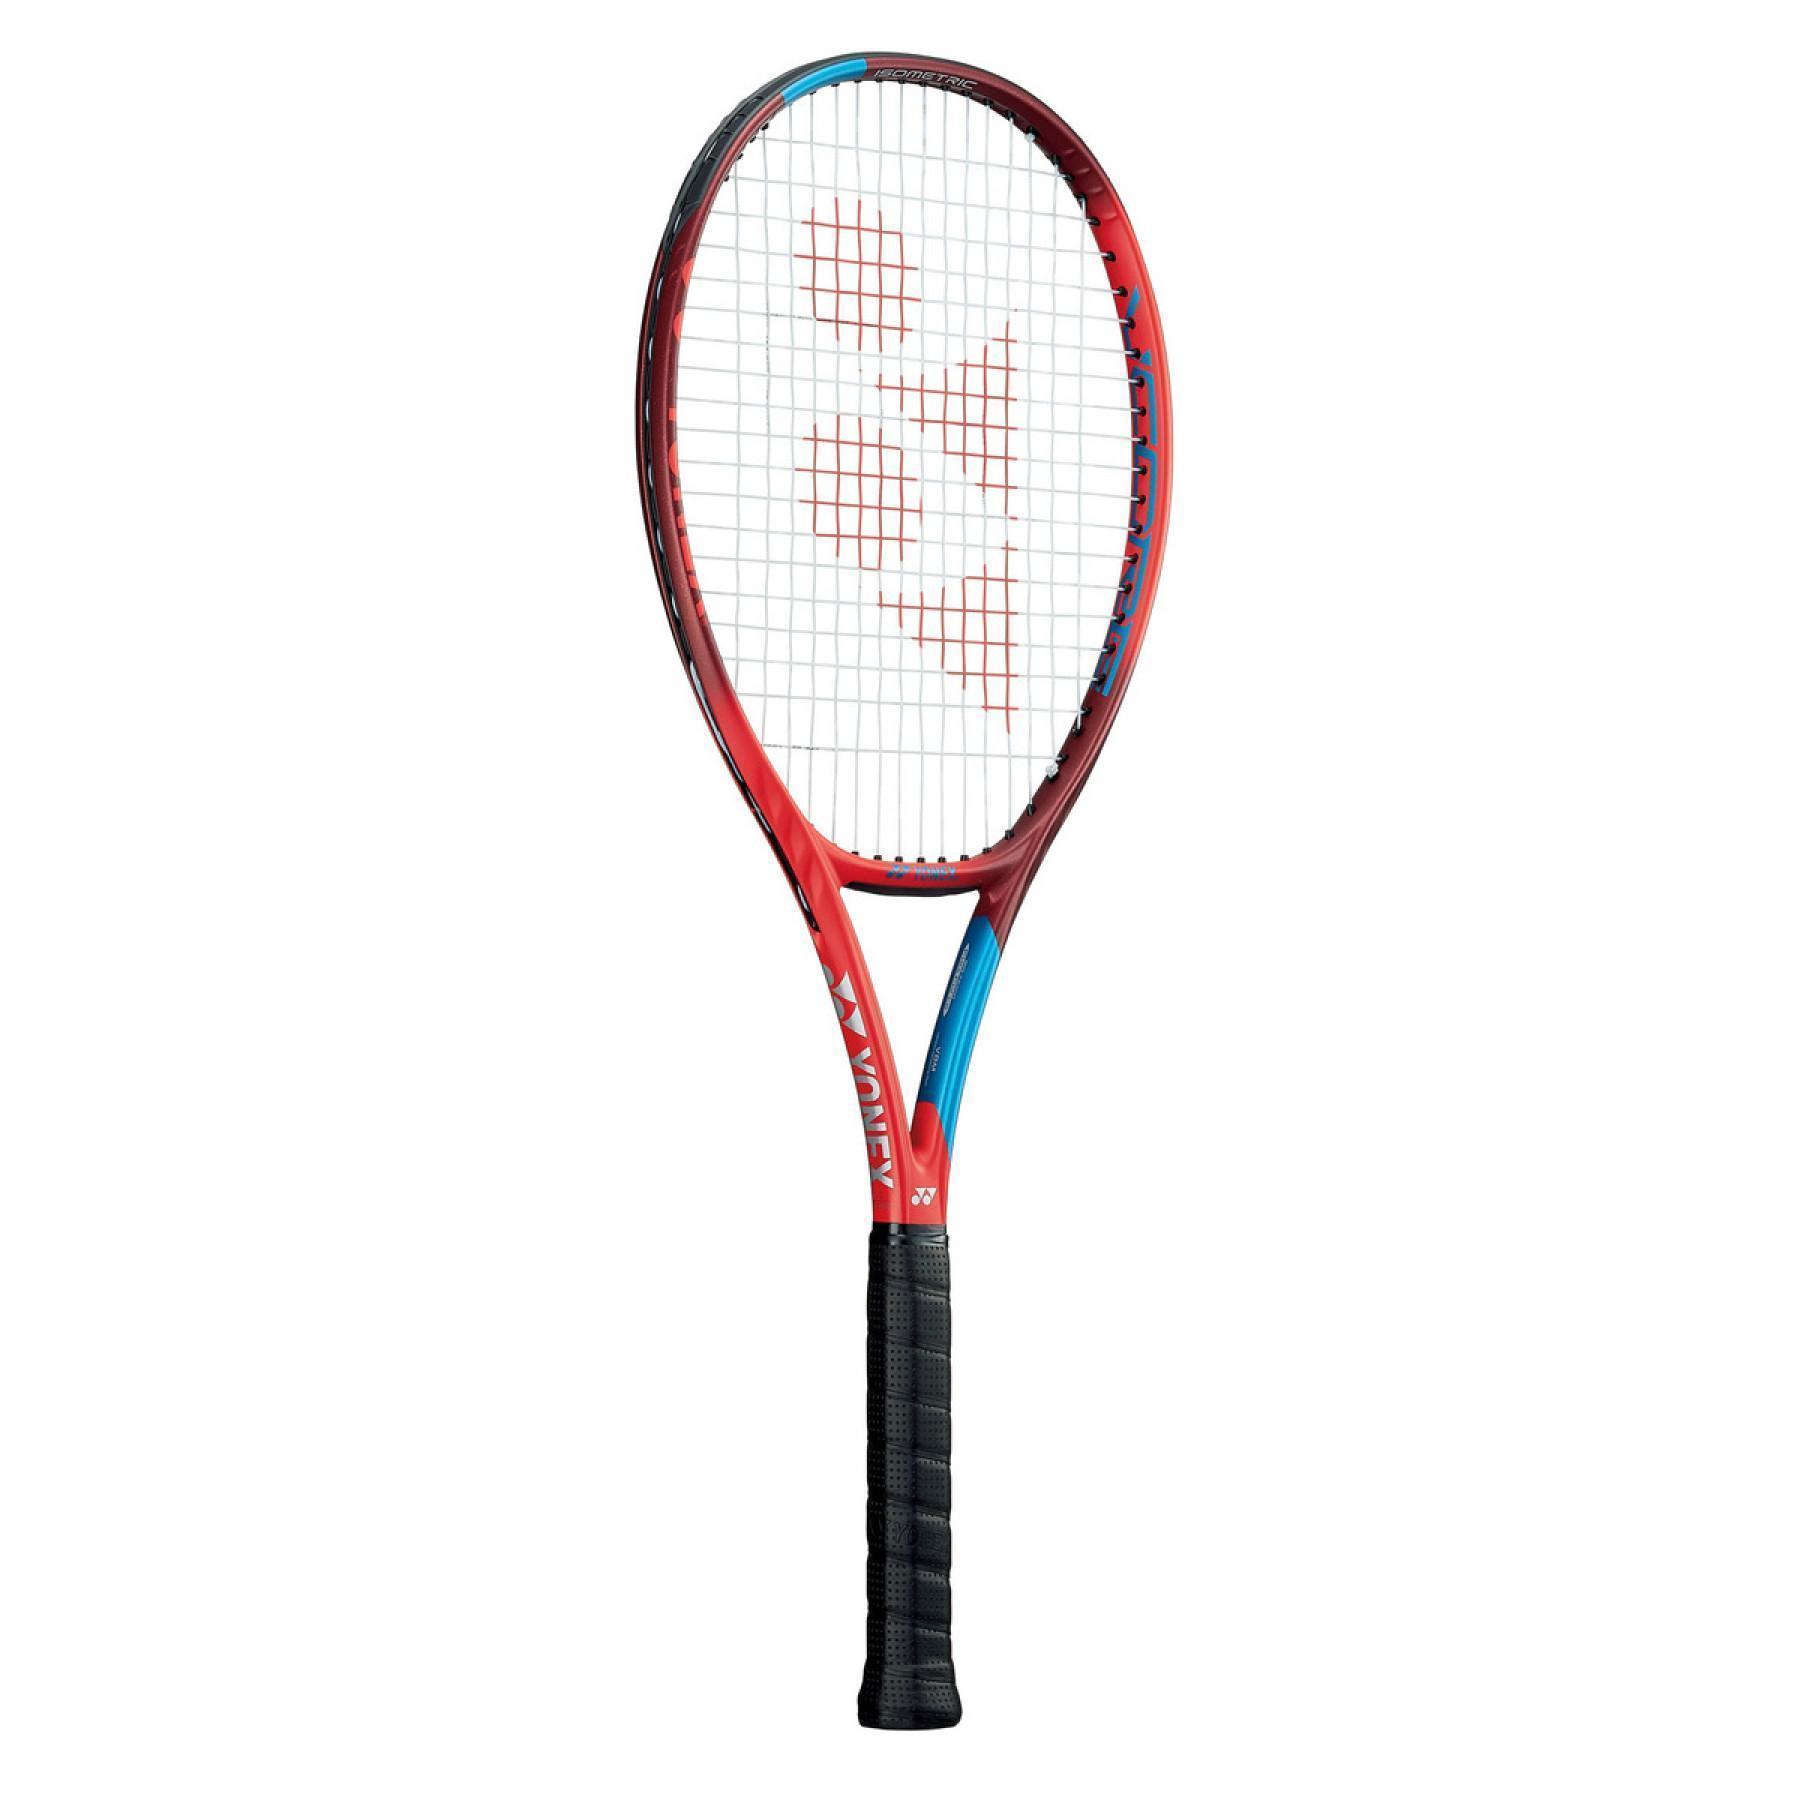 Tennis racket Yonex Vcore 98 nc